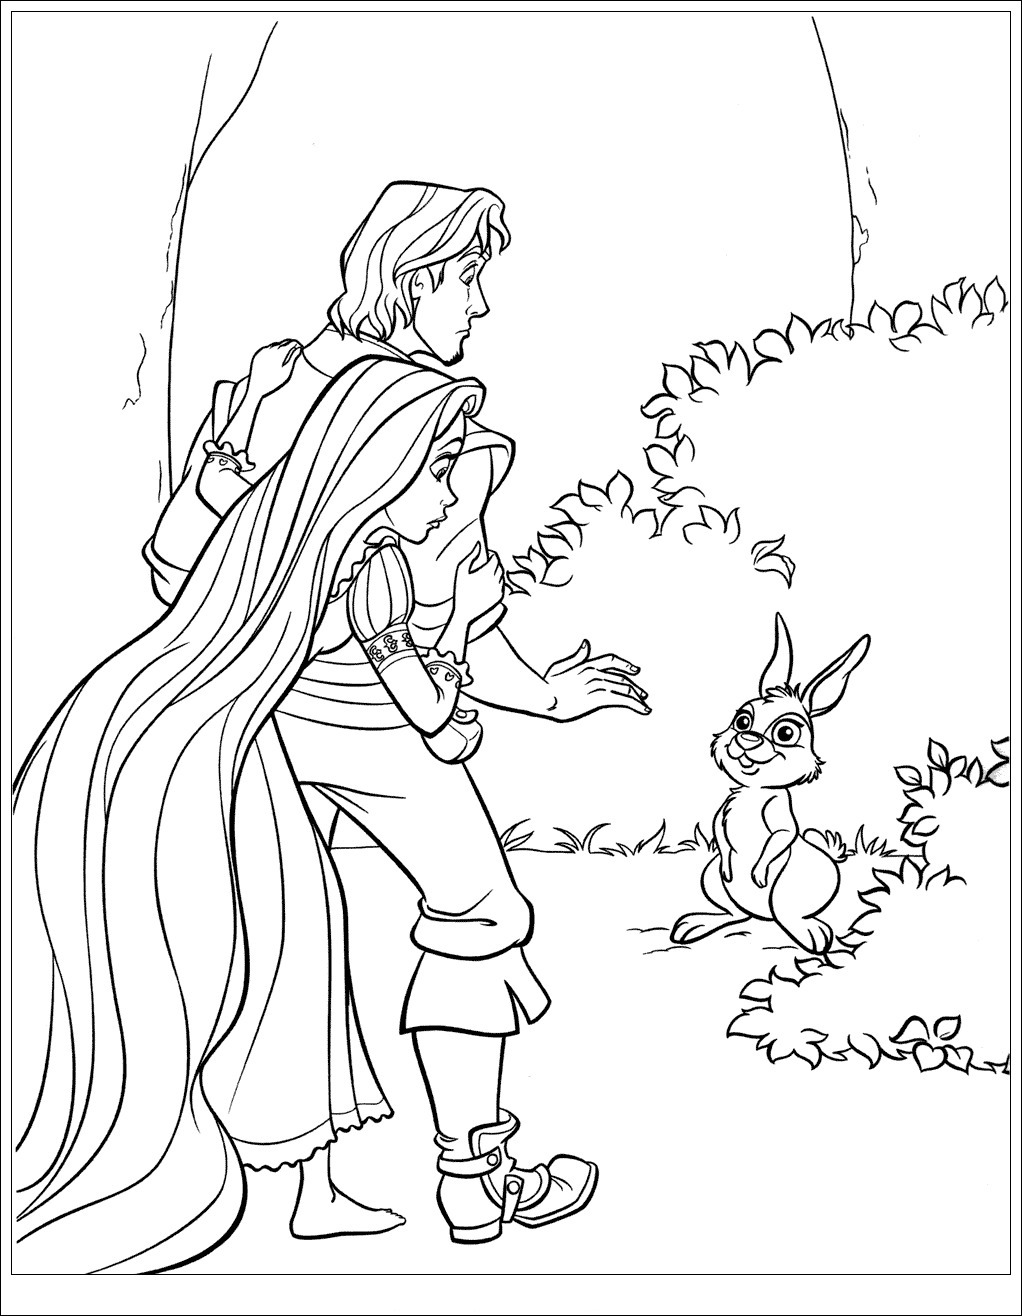 Flynn e il coniglio di Rapunzel